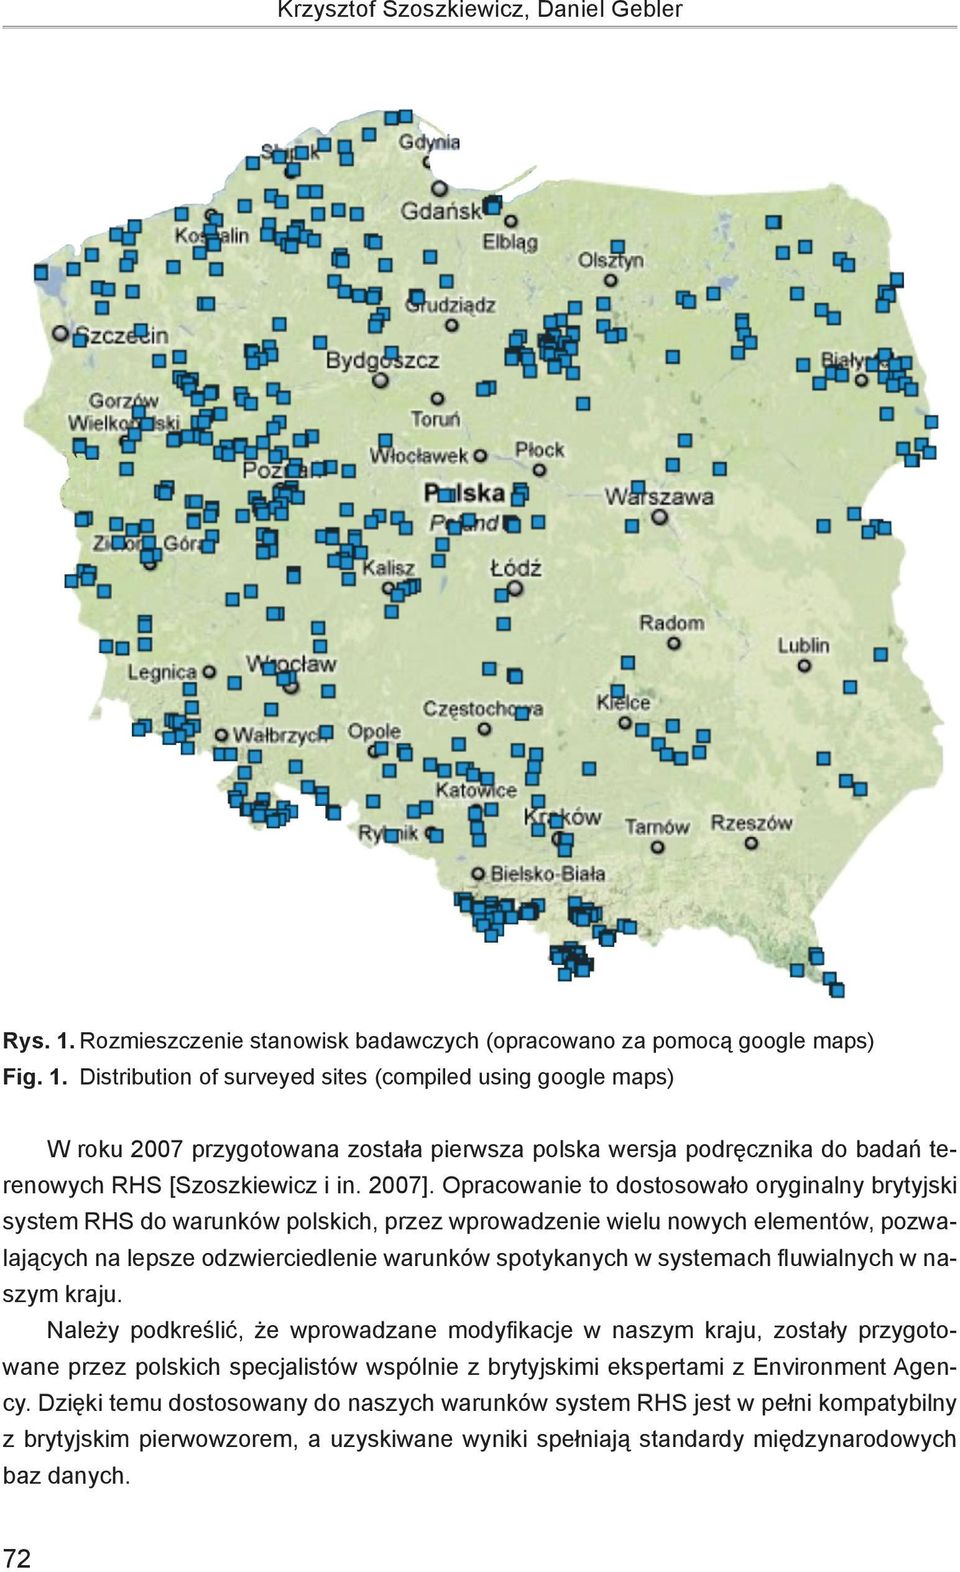 Distribution of surveyed sites (compiled using google maps) W roku 2007 przygotowana została pierwsza polska wersja podręcznika do badań terenowych RHS [Szoszkiewicz i in. 2007].